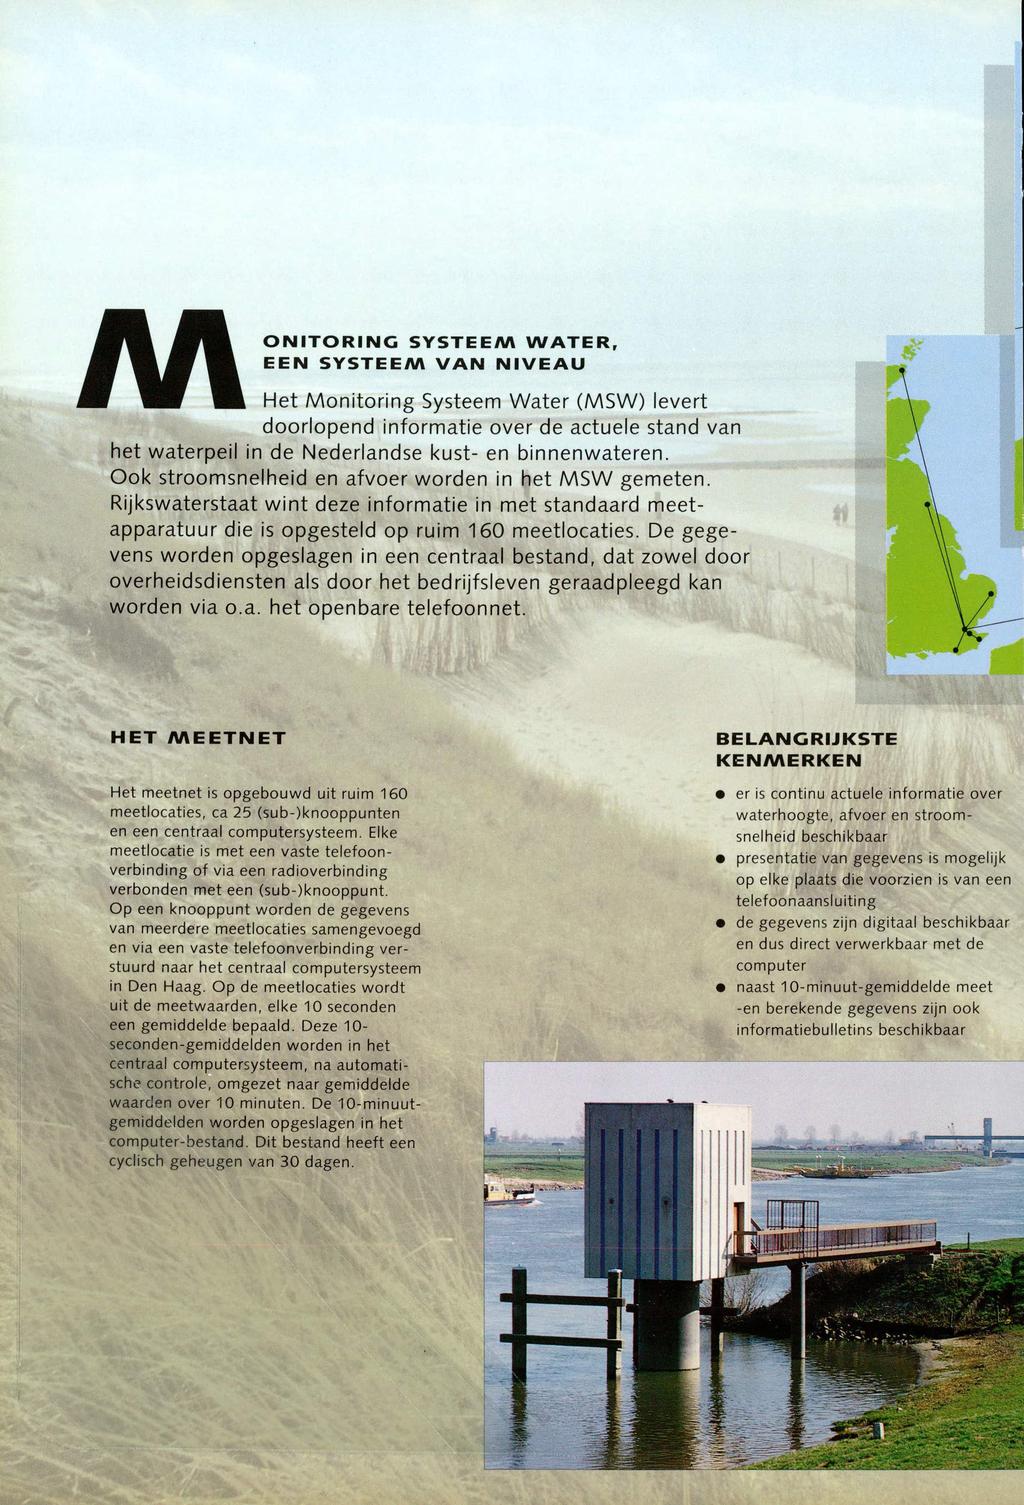 ONITORING SYSTEEM WATER, EEN SYSTEEM VAN NIVEAU AAHet Monitoring Systeem Water (MSW) levert doorlopend informatie over de actuele stand van het waterpeil in de Nederlandse kust en binnenwateren.